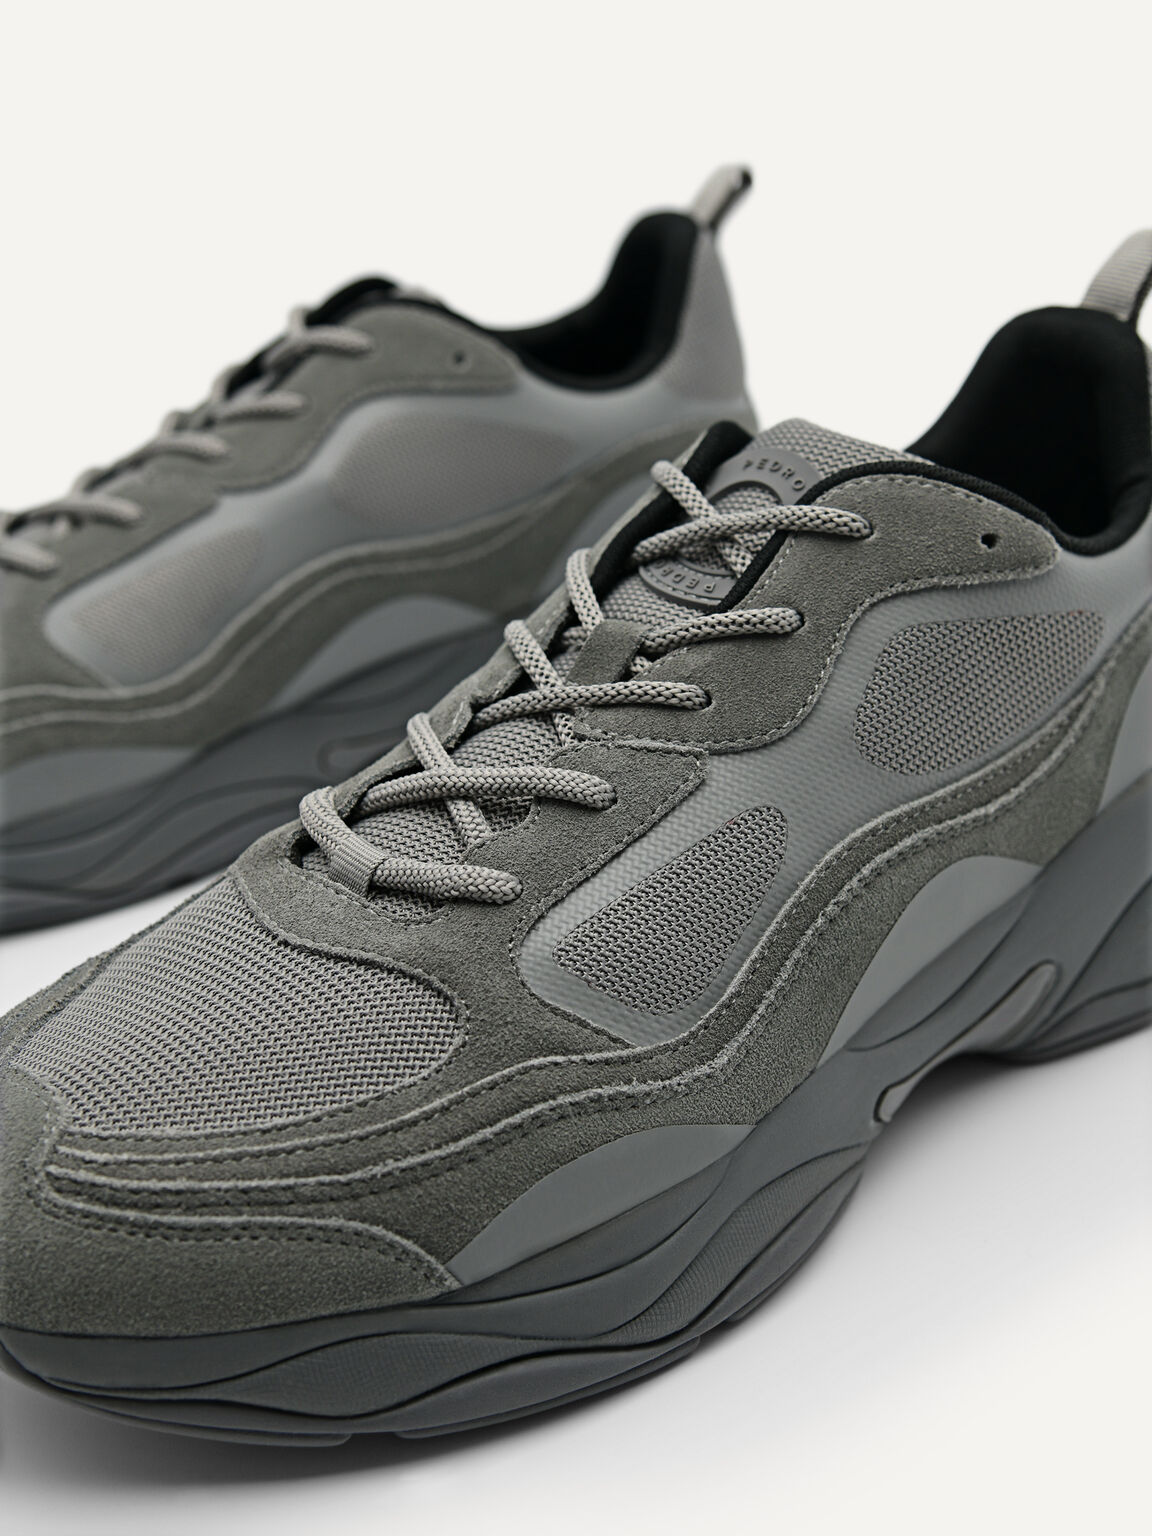 Magma絨面運動鞋, 灰色